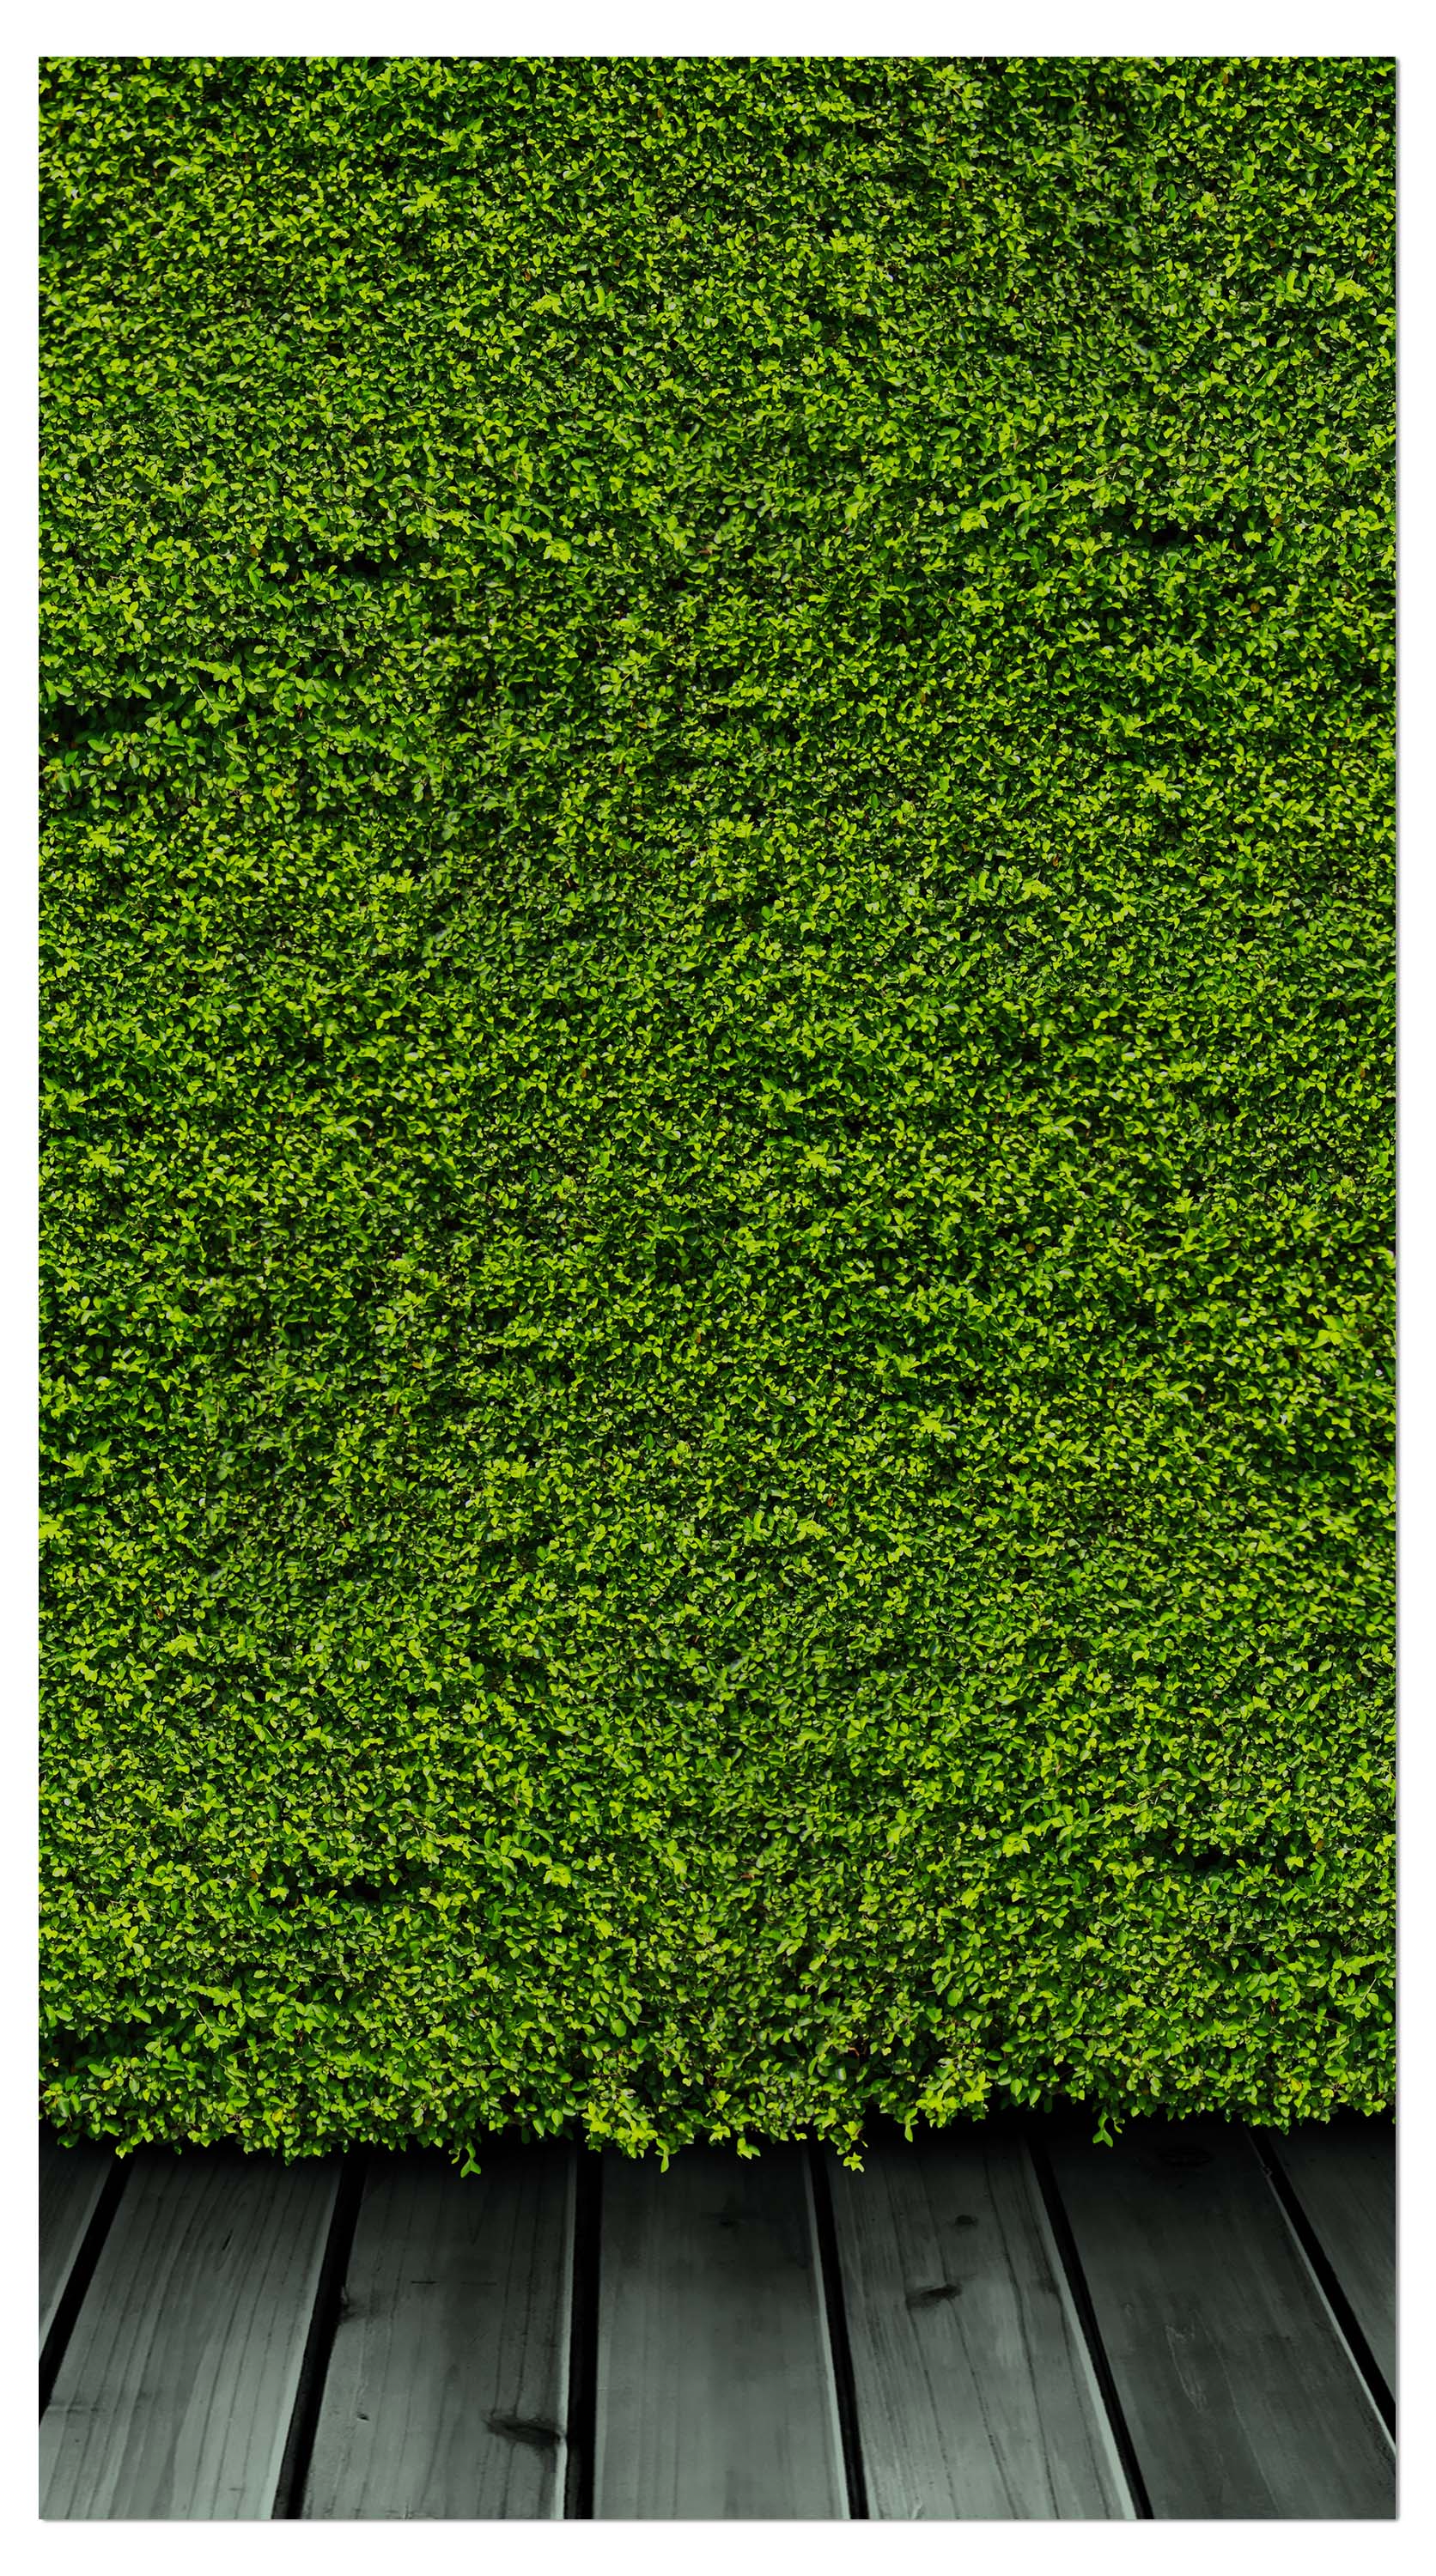 Garderobe Grüne Mauer M0572 entdecken - Bild 4